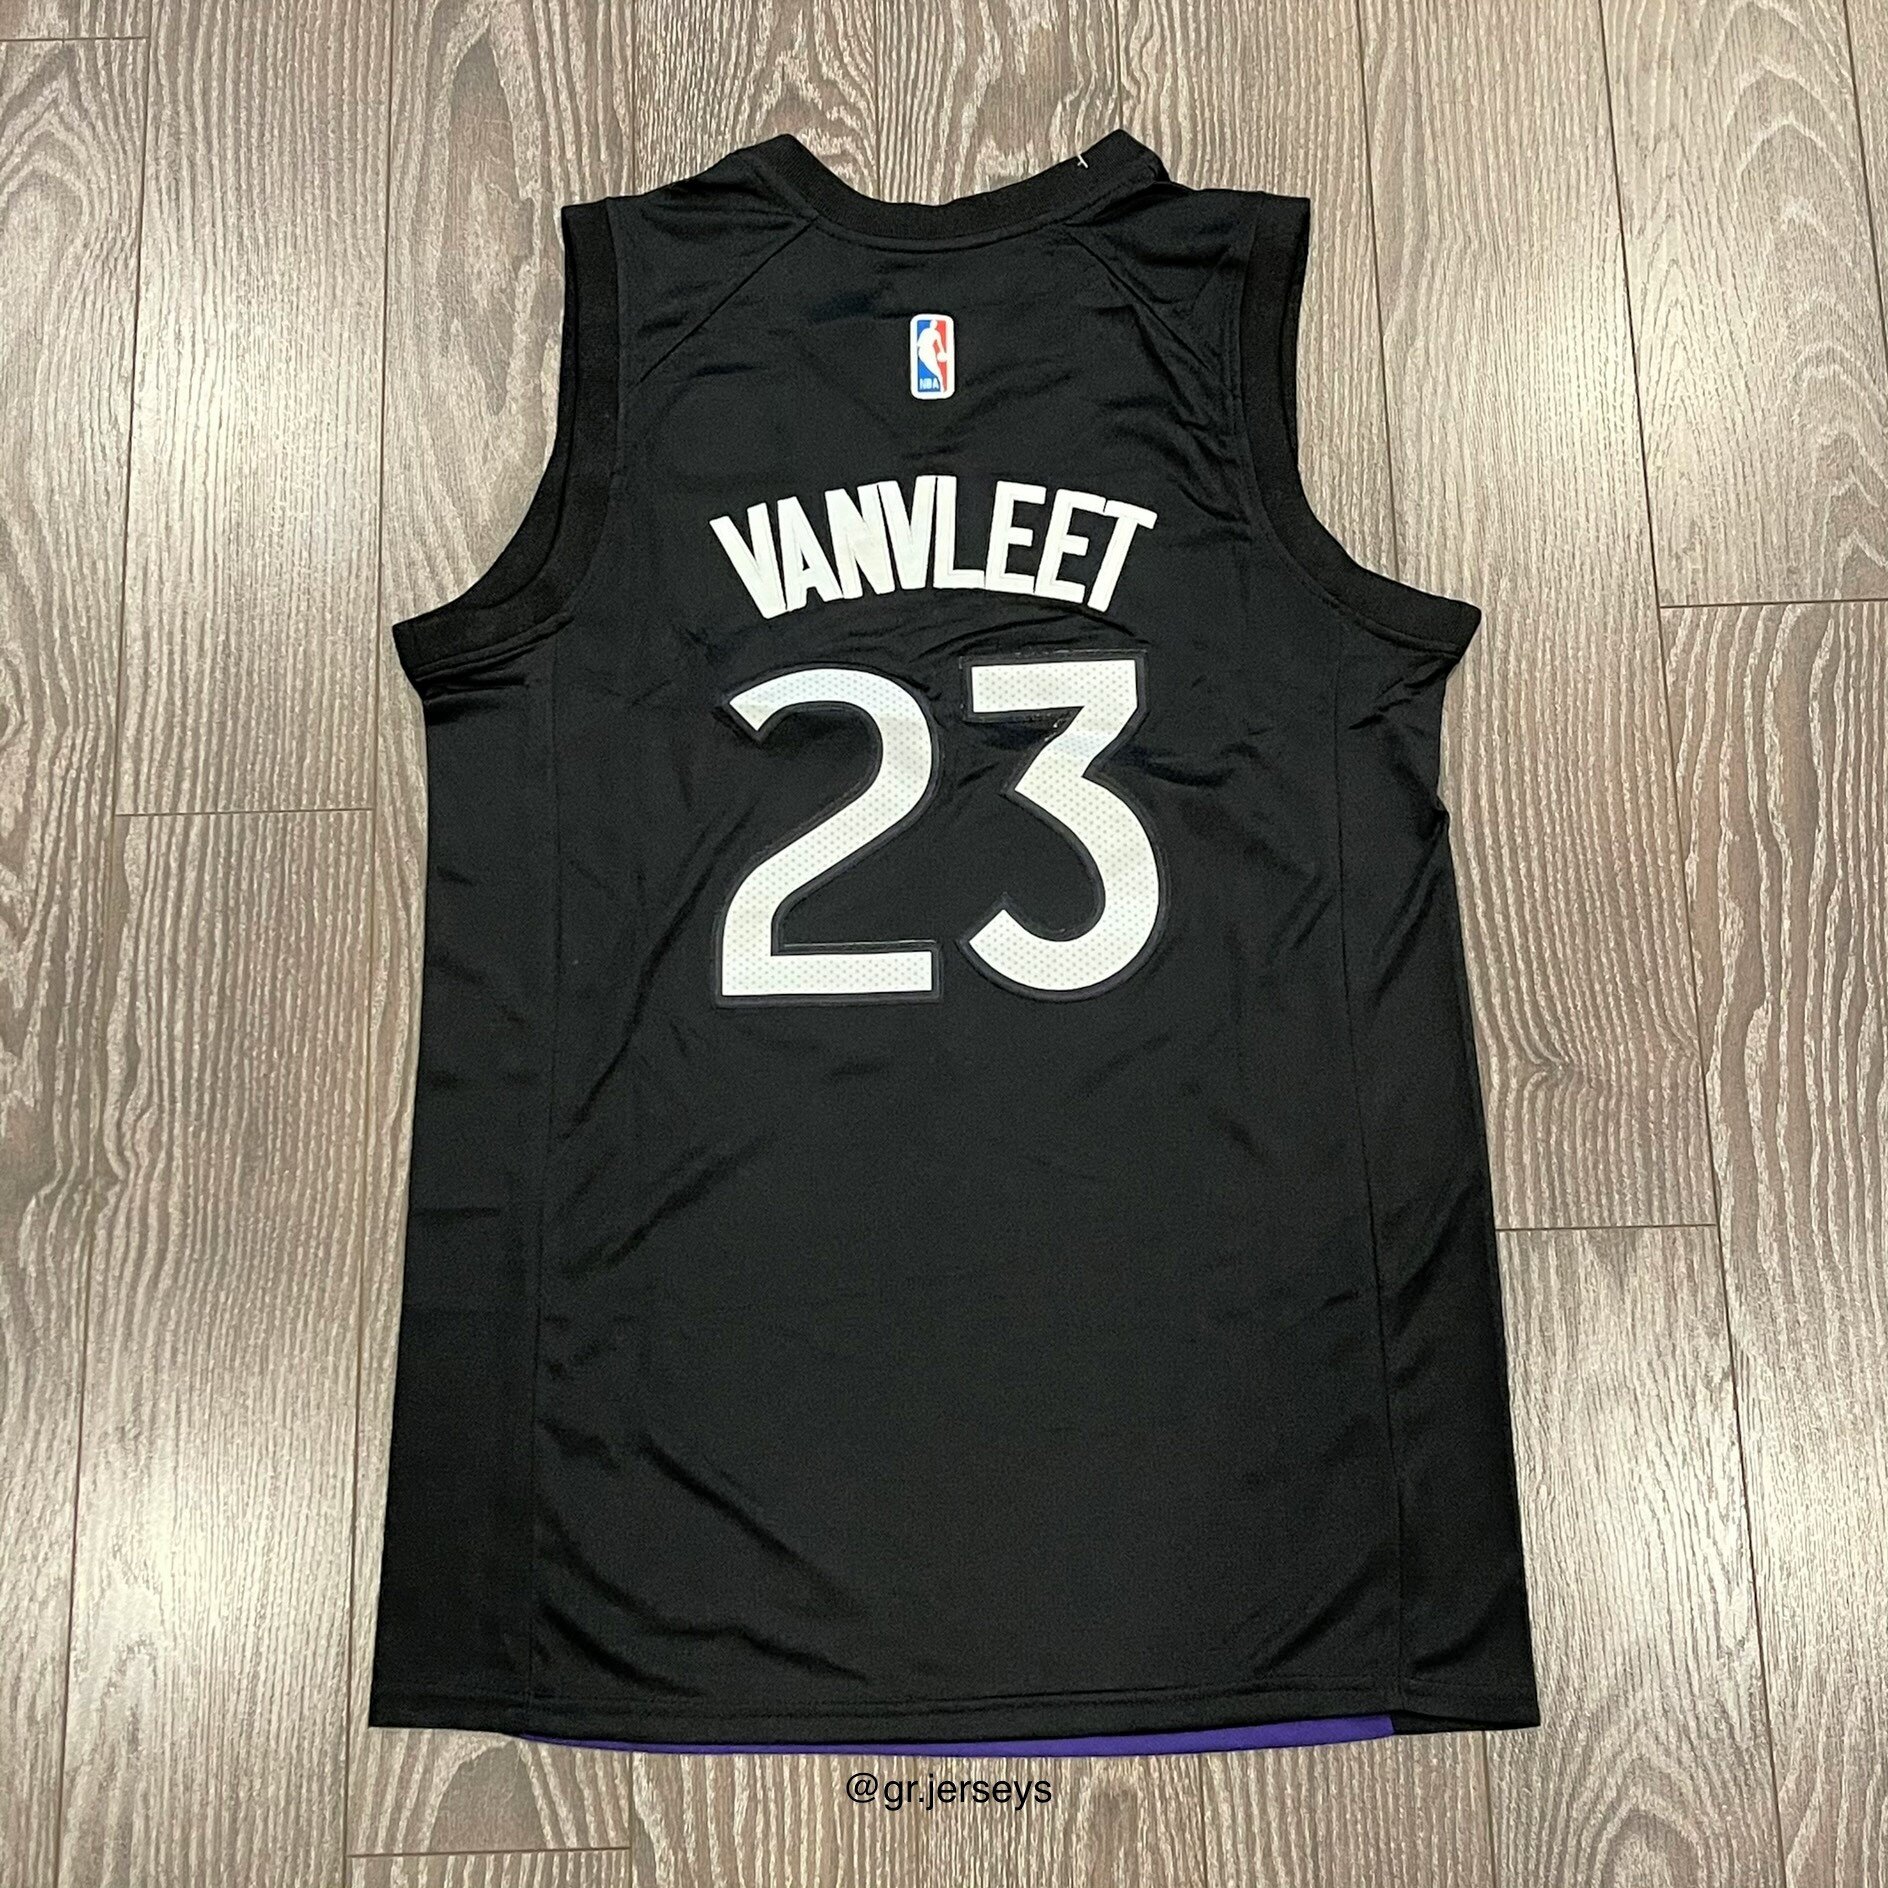 Toronto Raptors VANVLEET#23 Purple NBA Jersey - Kitsociety